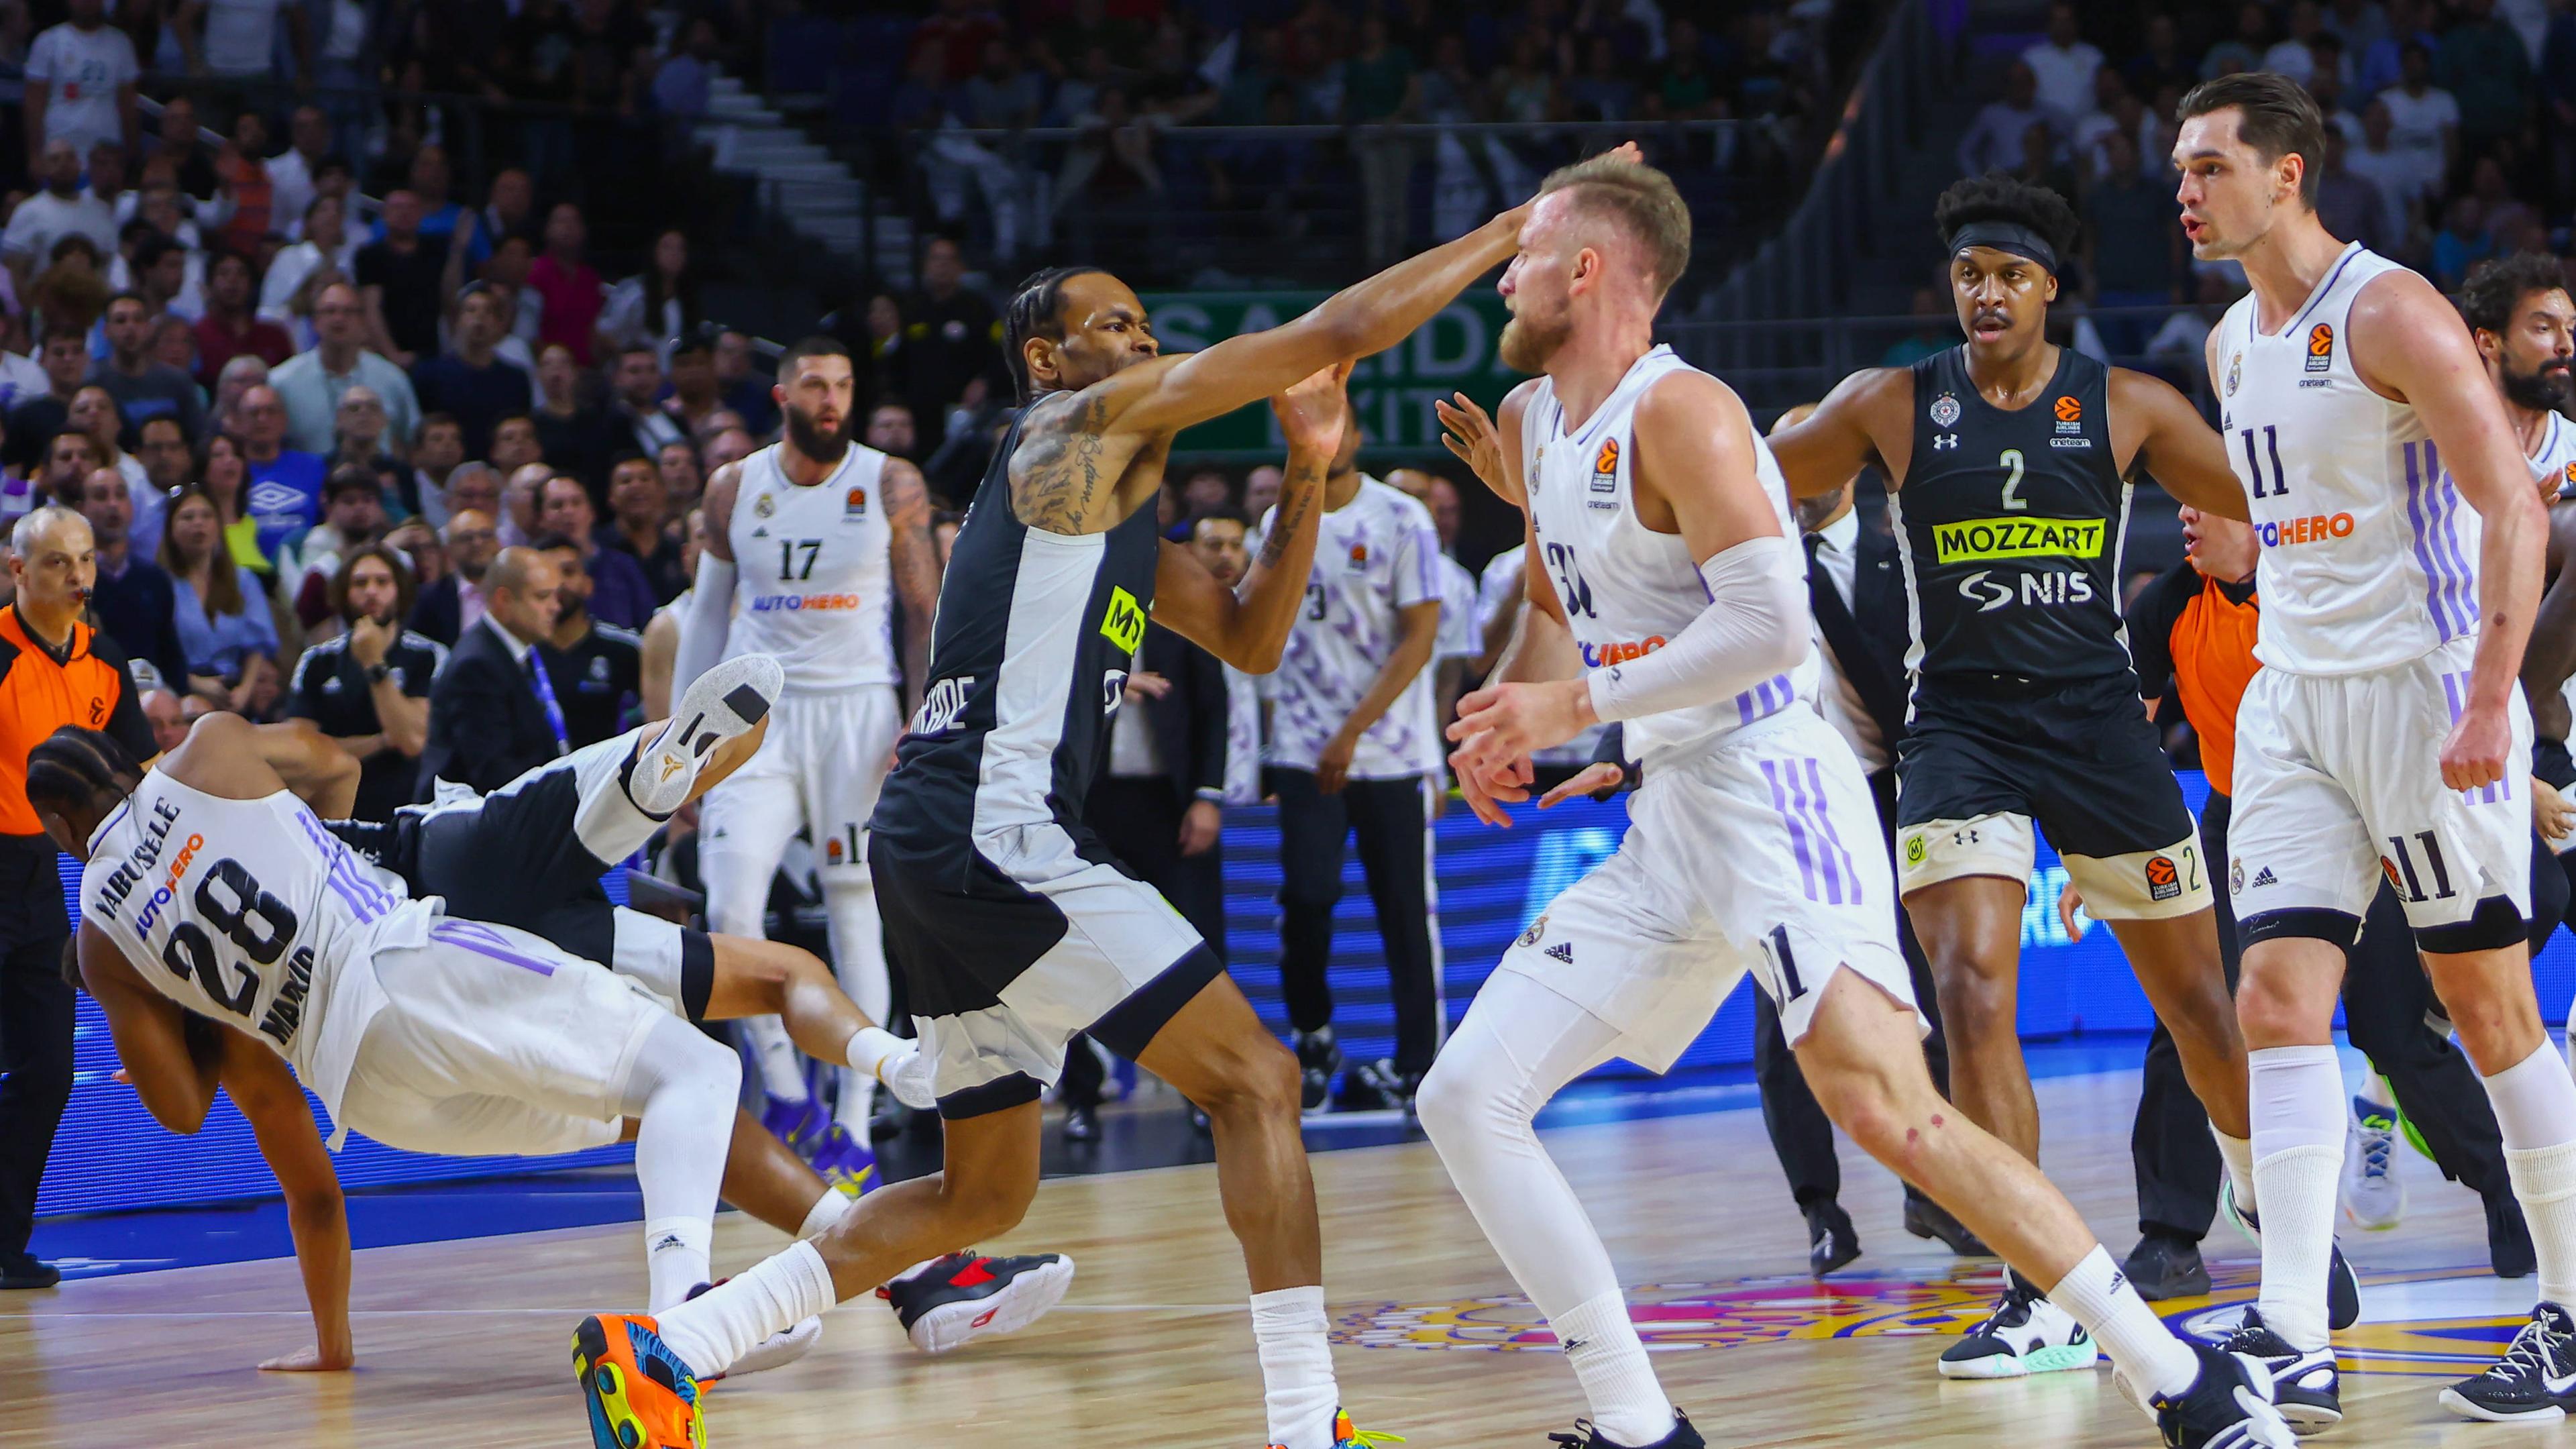 Das Basketball-EuroLeague-Spiel zwischen Madrid und Belgrad eskalierte in eine Massenschlägerei